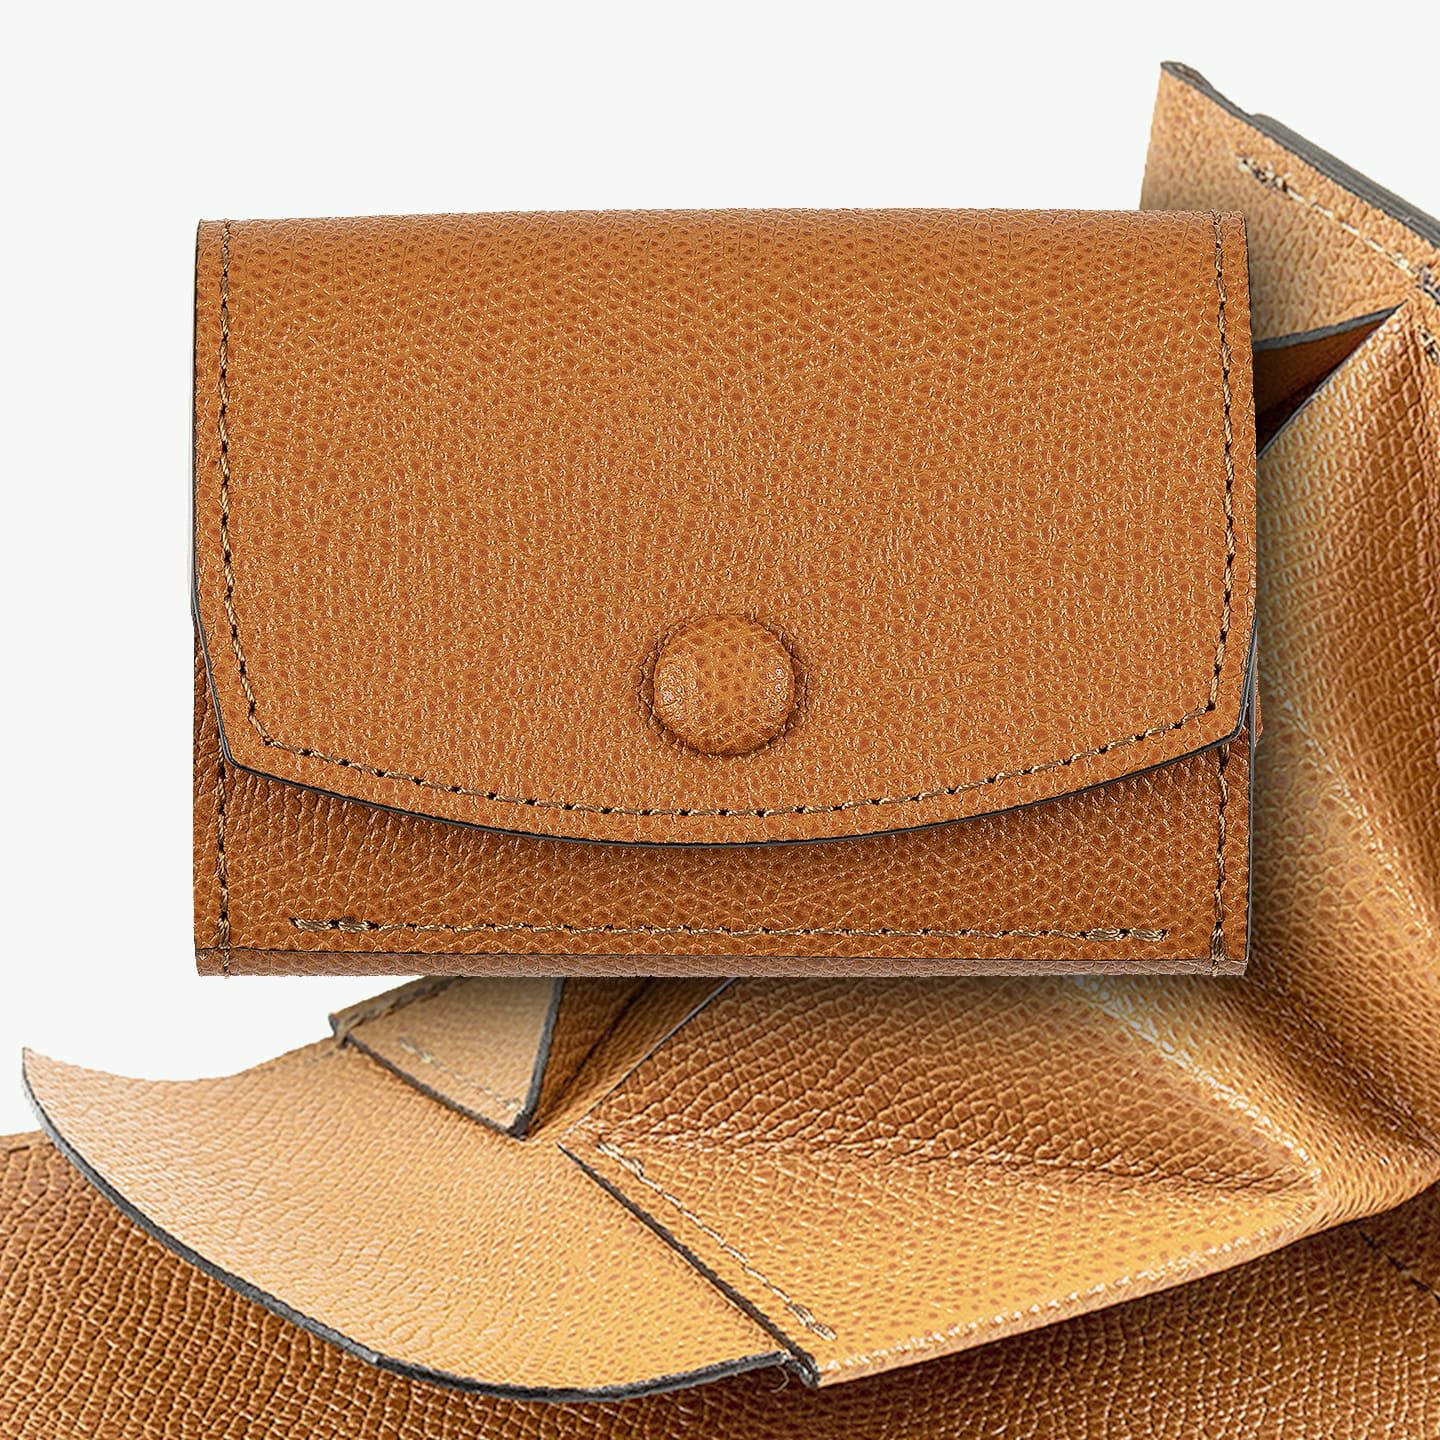 ドーフィン コンパクトウォレット “ドブラール” | 大人のバッグ・財布 ...